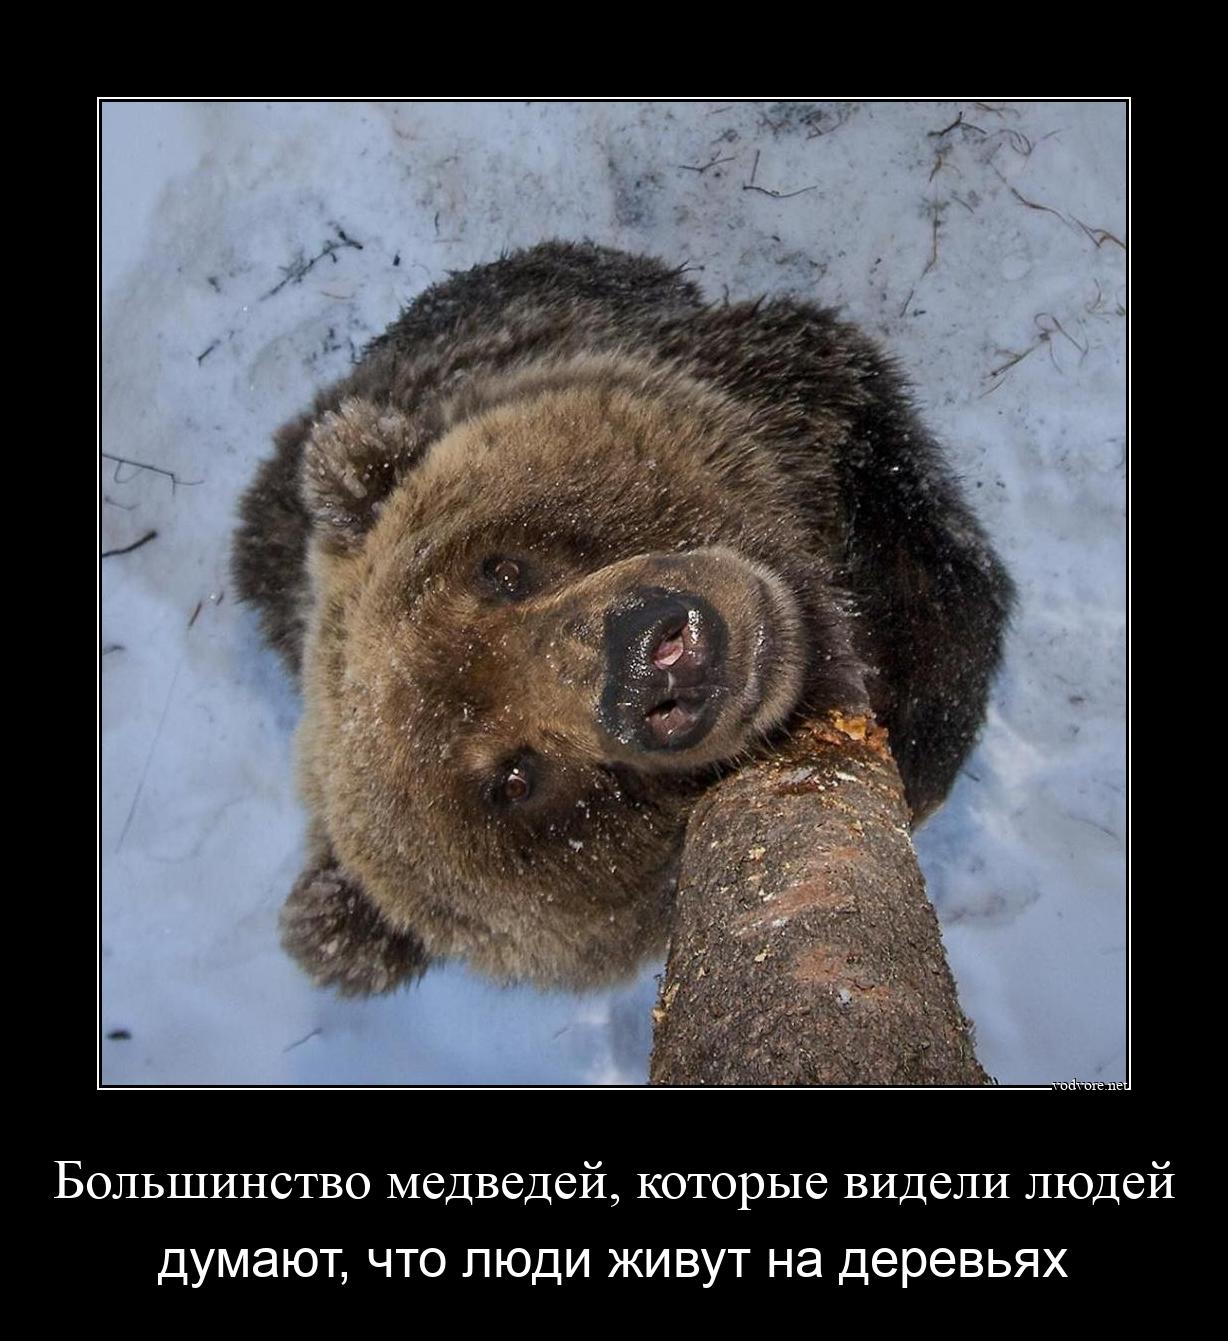 Демотиватор: Большинство медведей, которые видели людей думают, что люди живут на деревьях